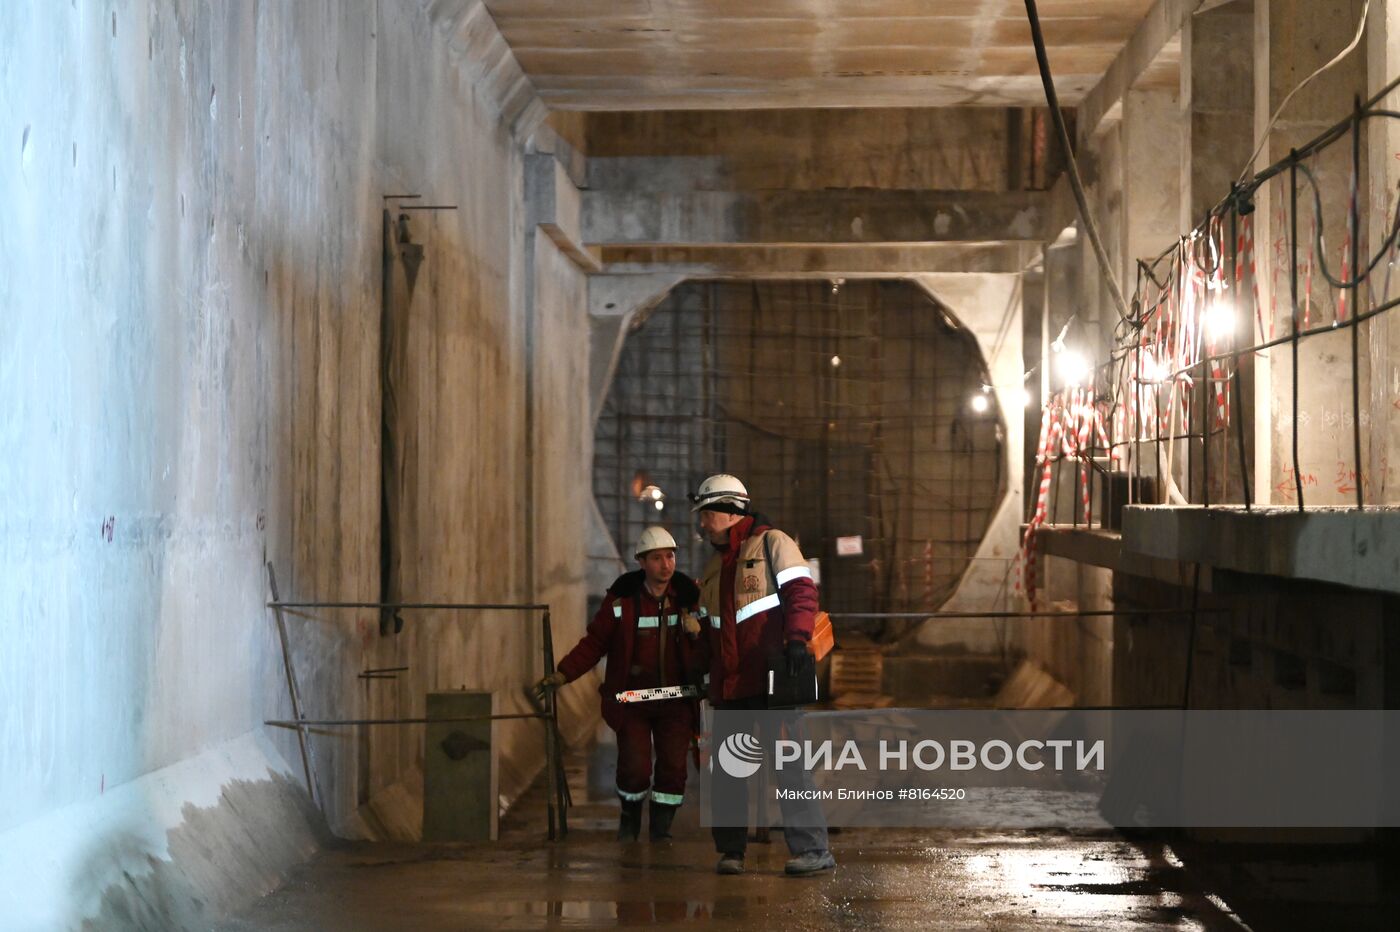 Строительство станции метро "Яхромская" 